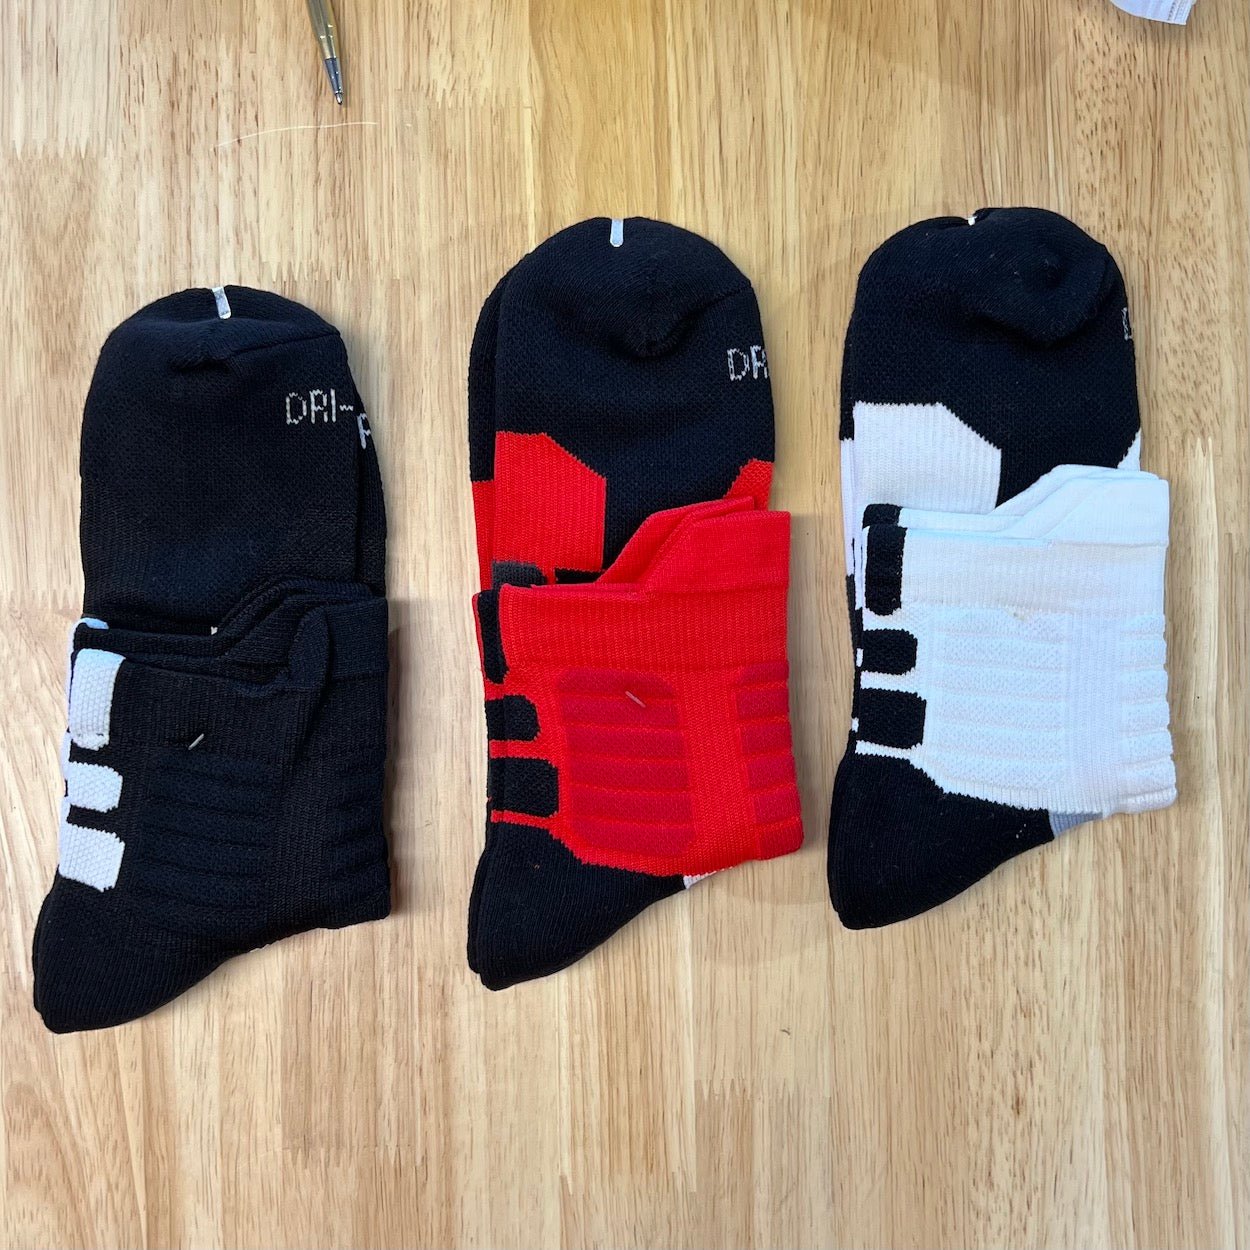 Premium High Ankle Sport Socks 3 Pack